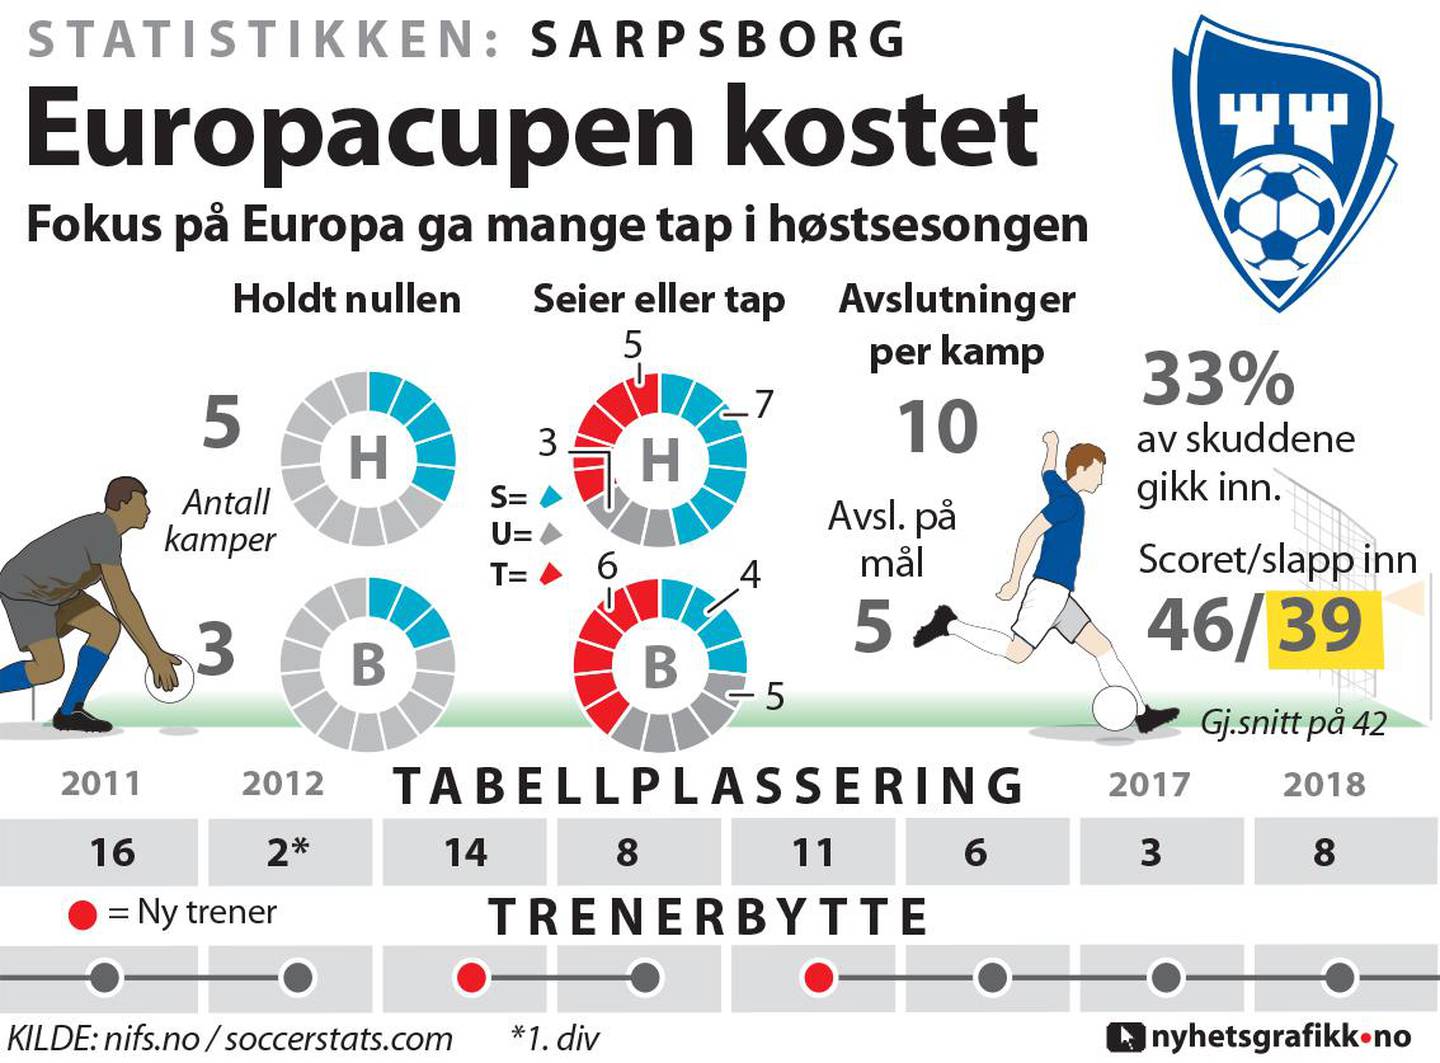 Sarpsborg: Slik presterte laget i 2018.